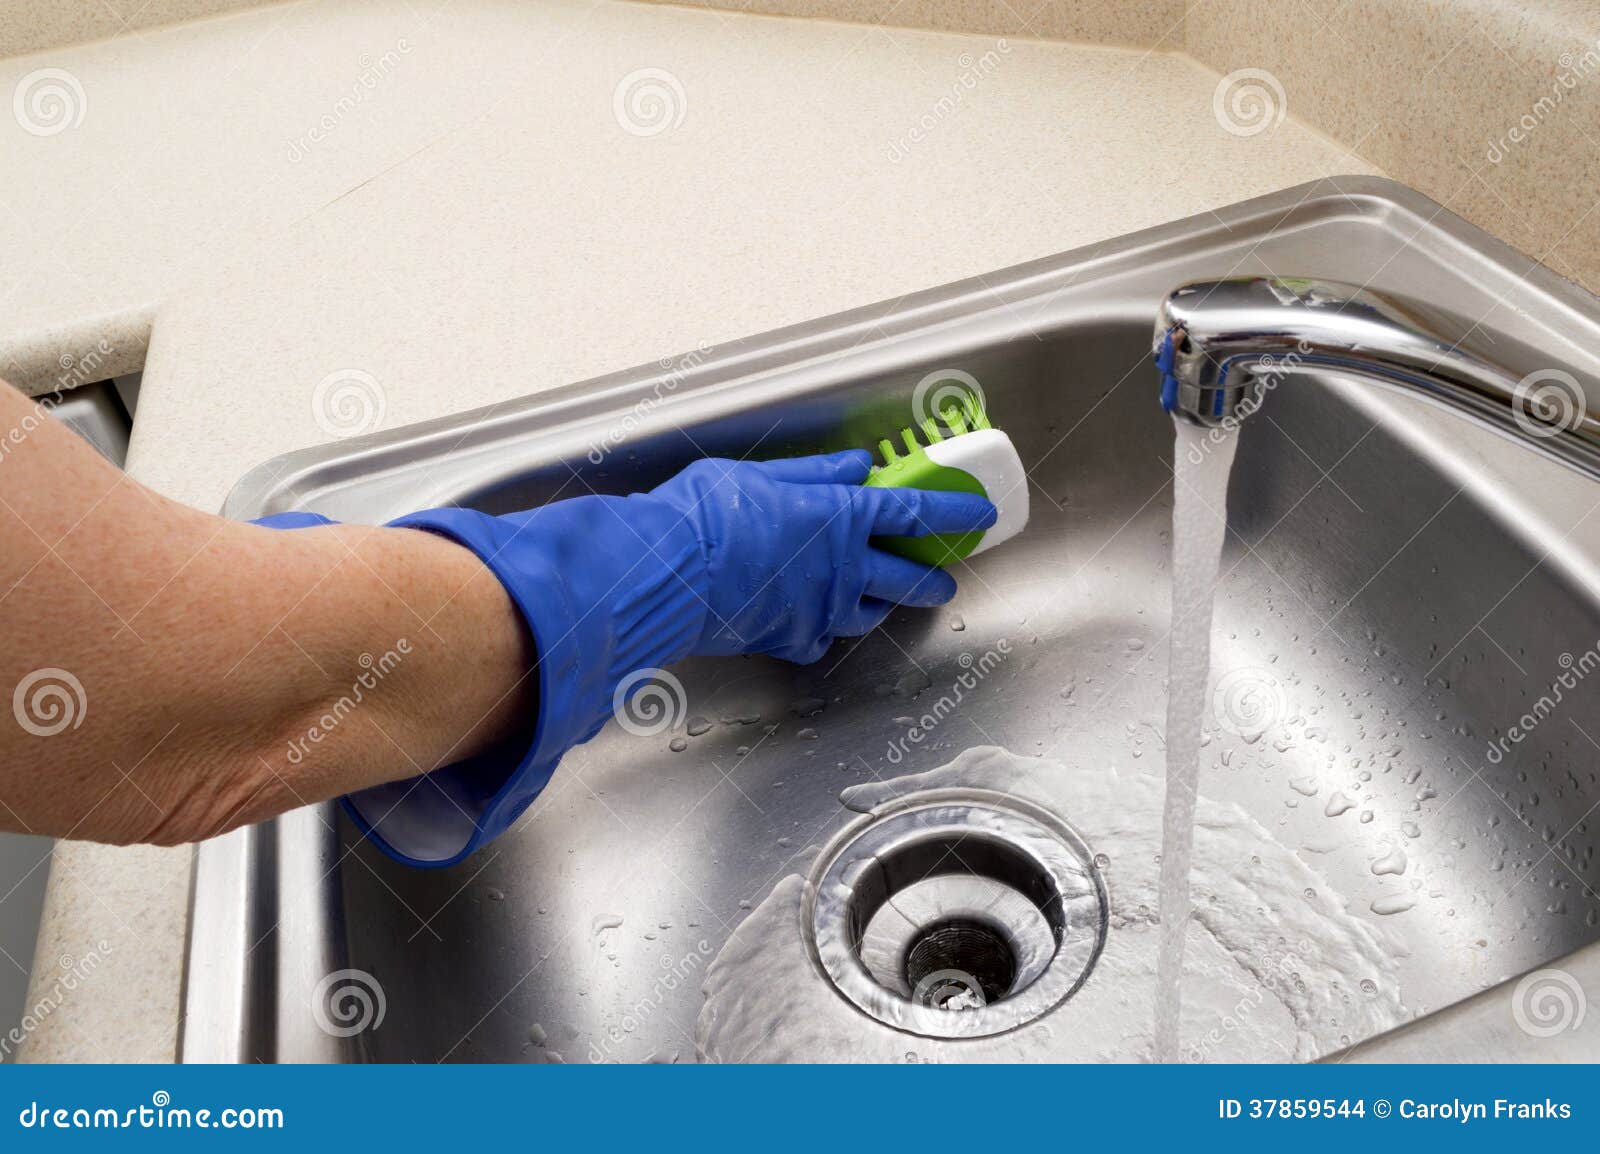 woman scrubbing sink